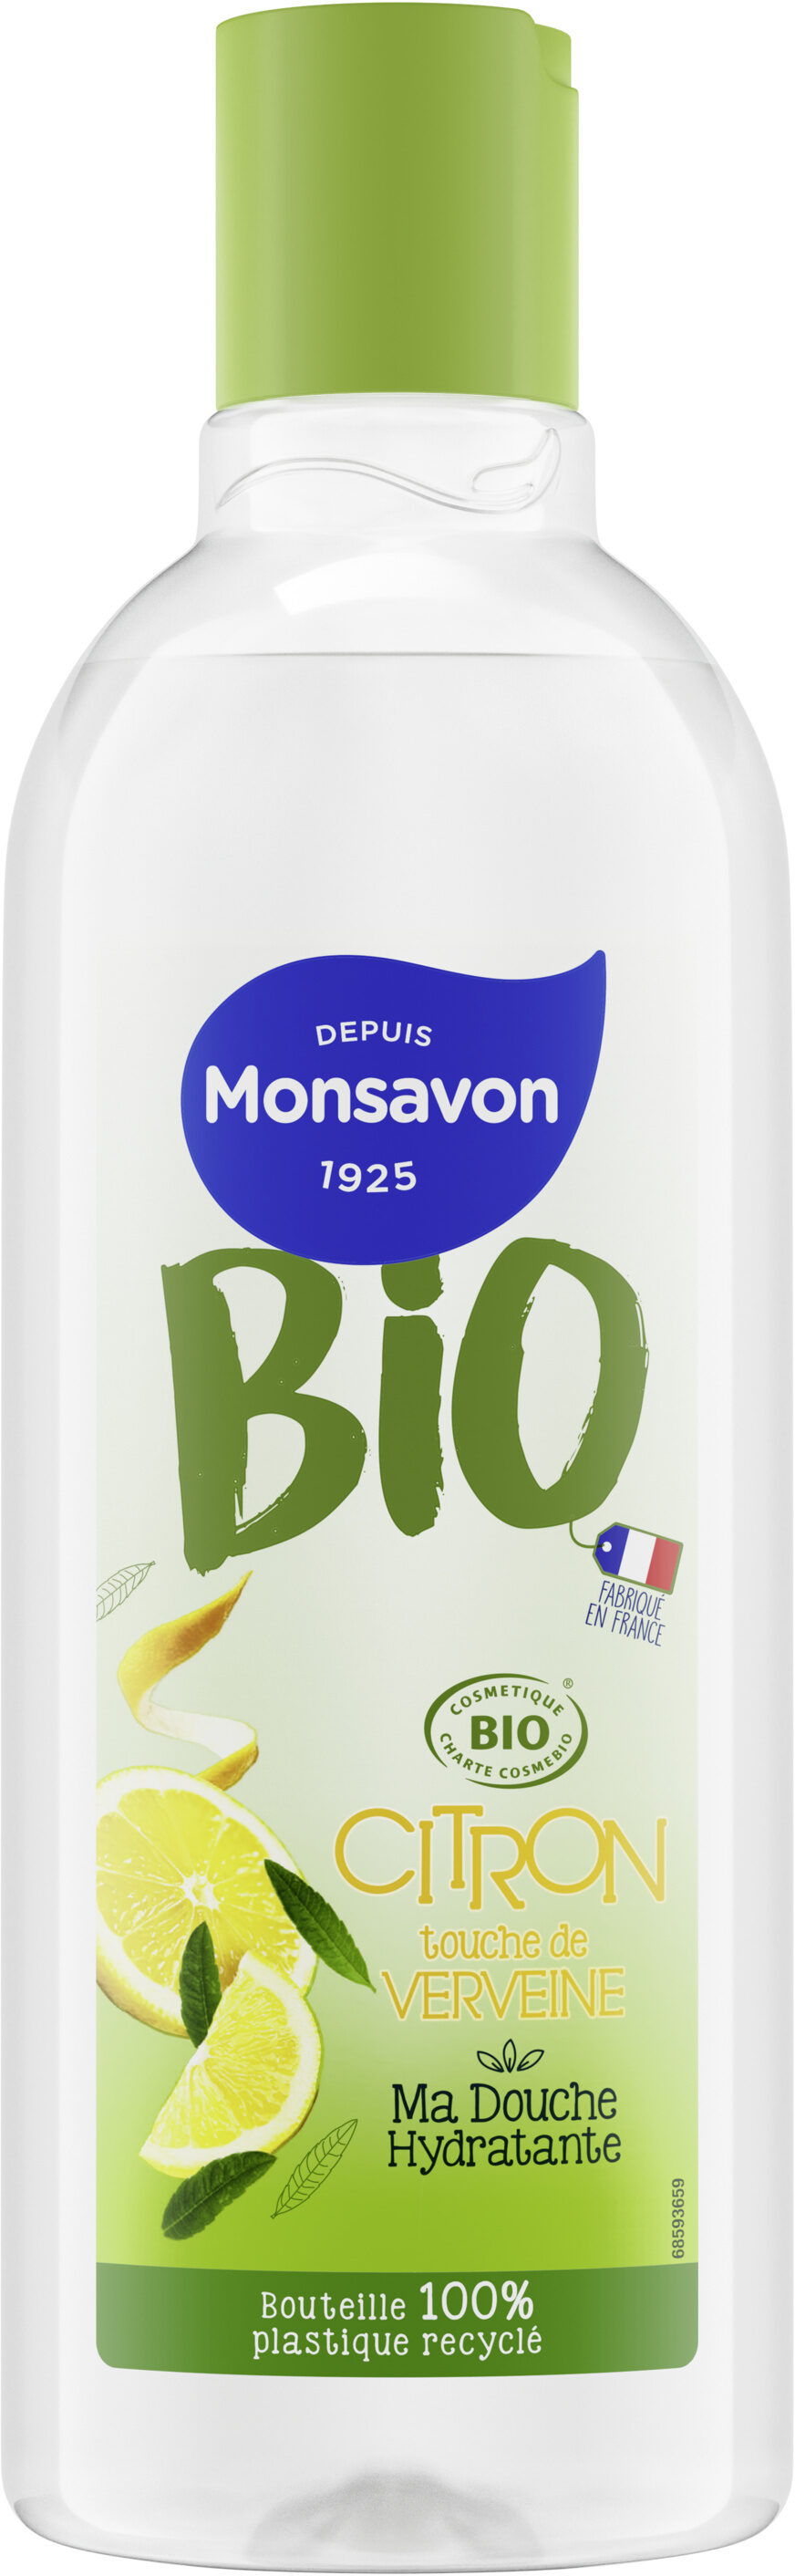 Monsavon Gel Douche Bio Citron Verveine - Produit - fr